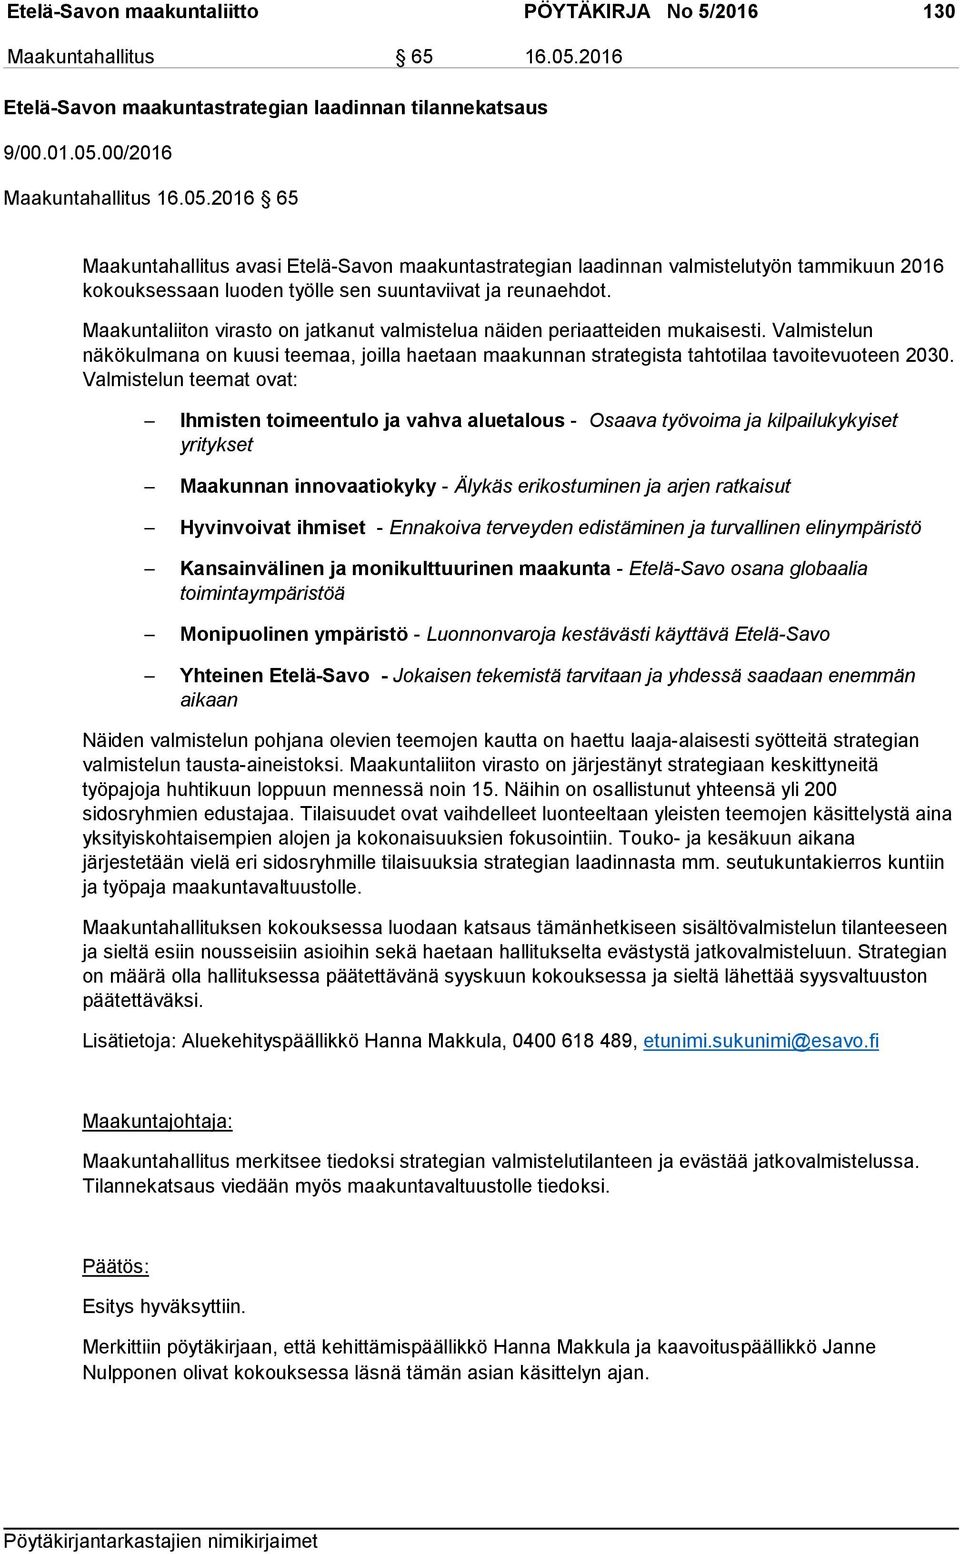 00/2016 Maakuntahallitus 16.05.2016 65 Maakuntahallitus avasi Etelä-Savon maakuntastrategian laadinnan valmistelutyön tammikuun 2016 kokouksessaan luoden työlle sen suuntaviivat ja reunaehdot.